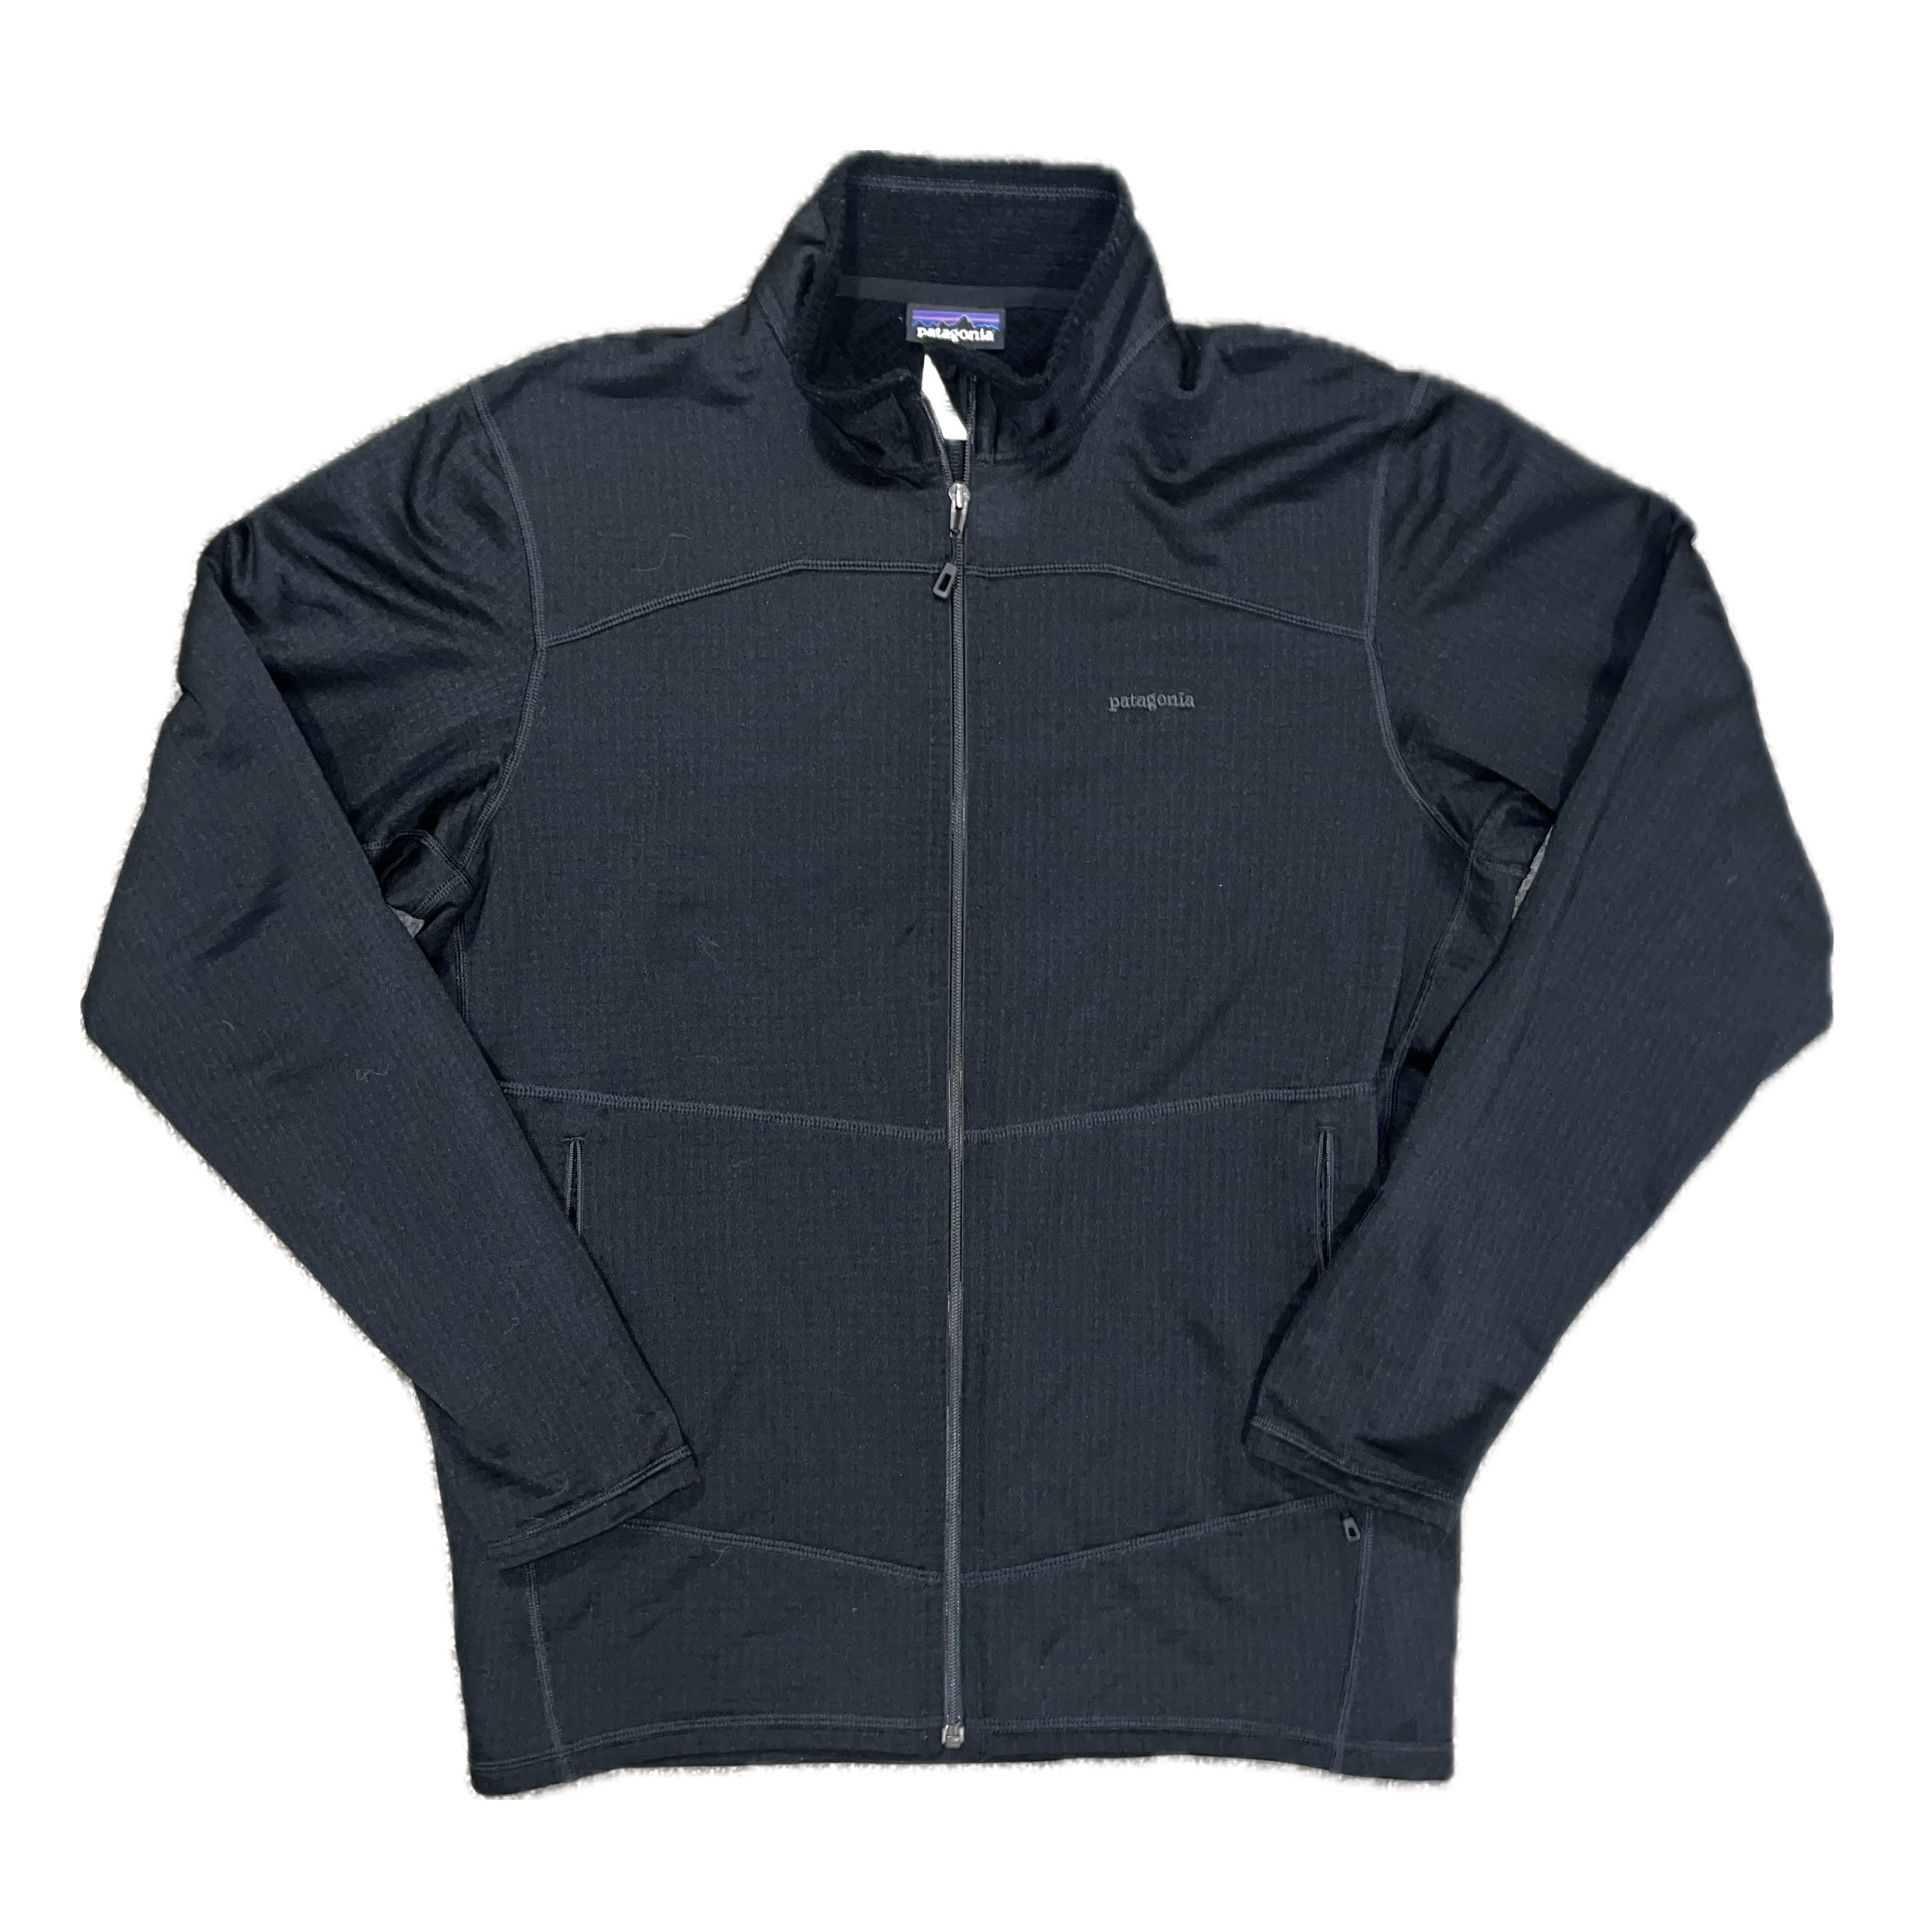 Patagonia Black Zip Up Jacket Size XL 